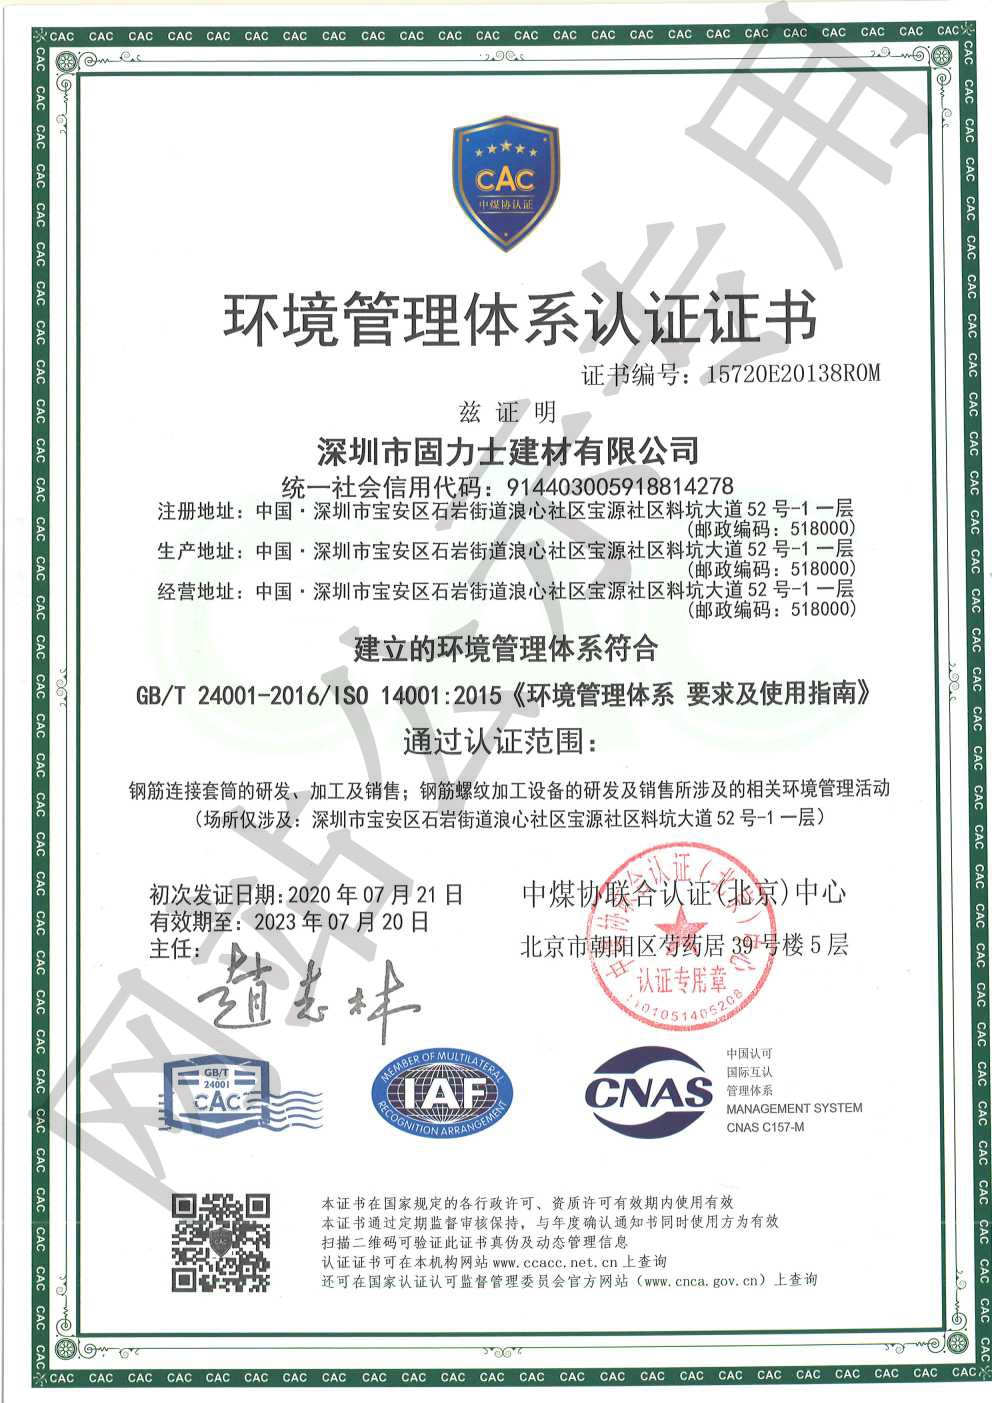 六弓乡ISO14001证书